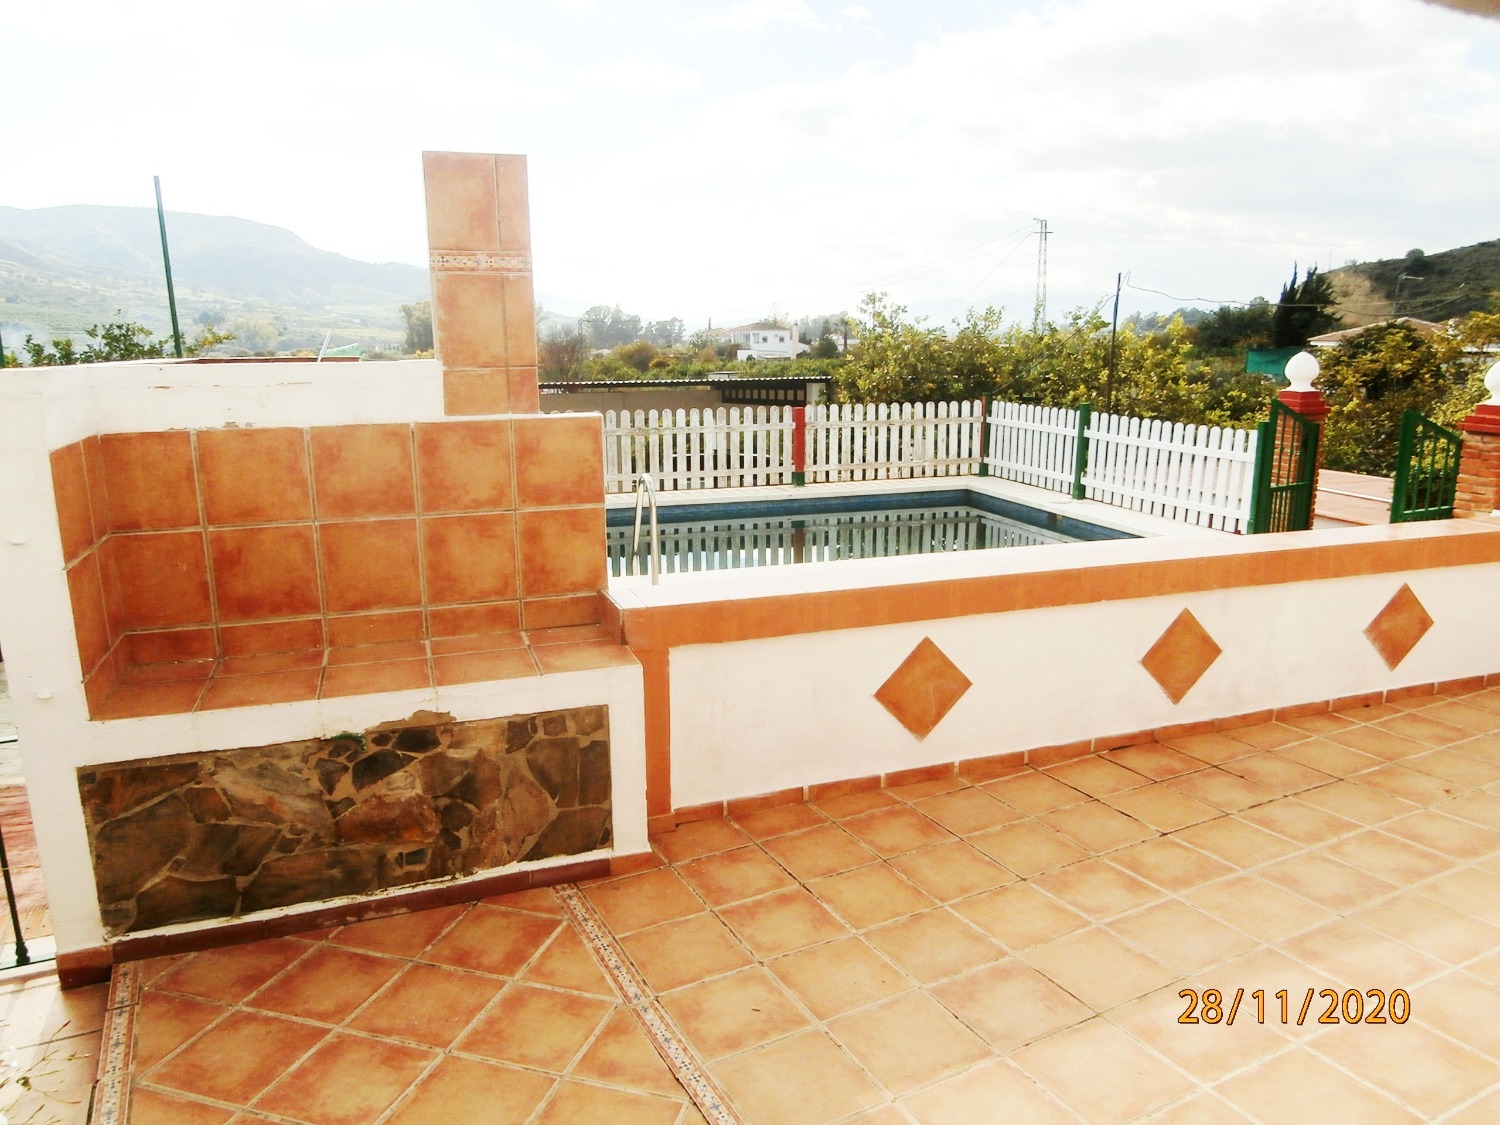 Stort parhus i andalusisk stil med pool, åkermark, helt inhägnad ca 3 220 m2, bra tillgång.